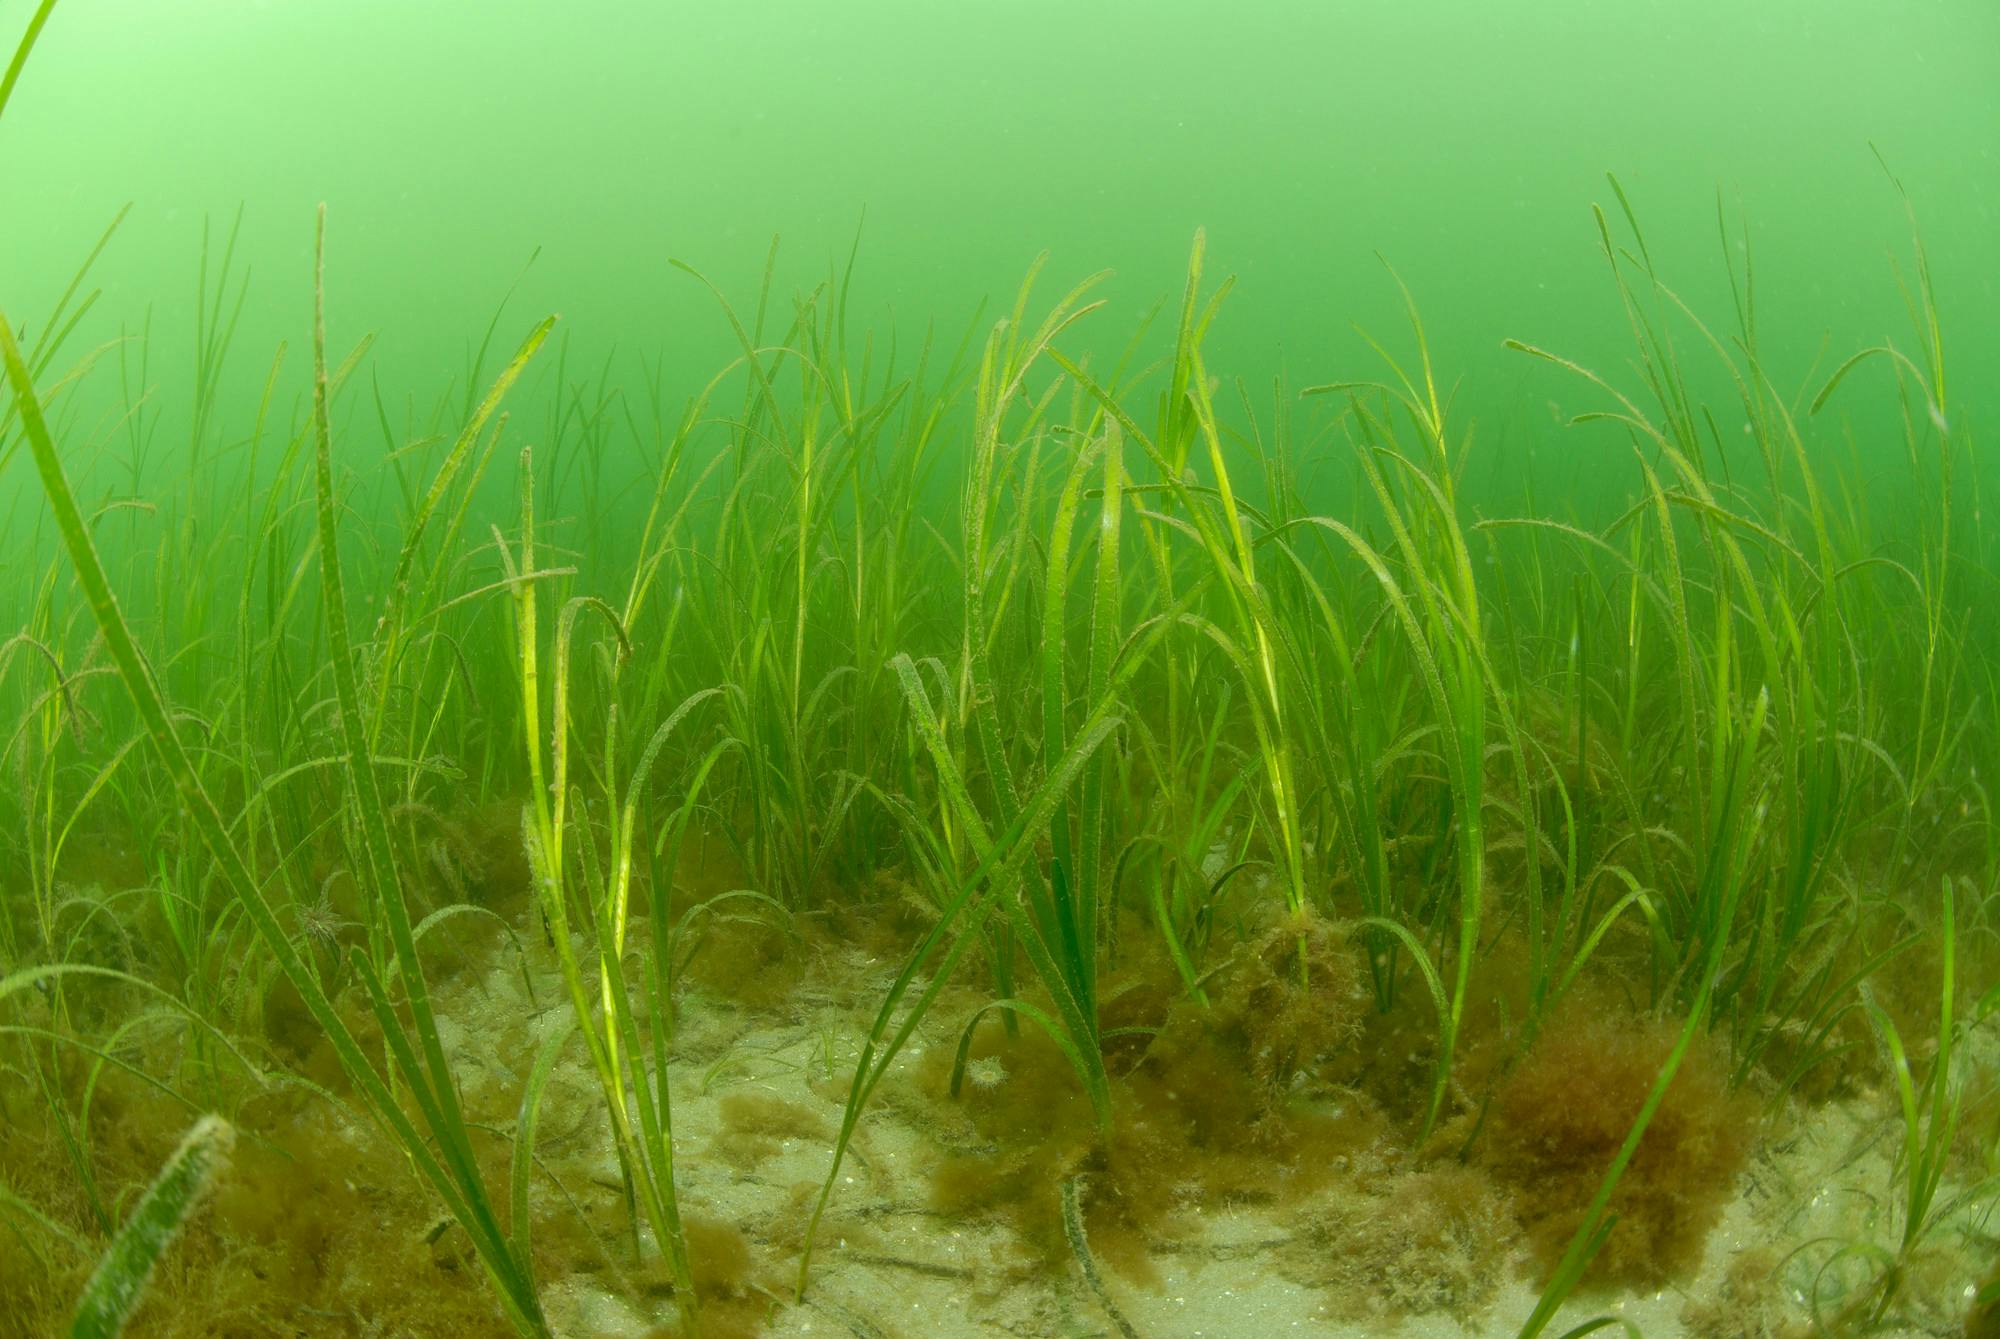 Under water eel grass bed